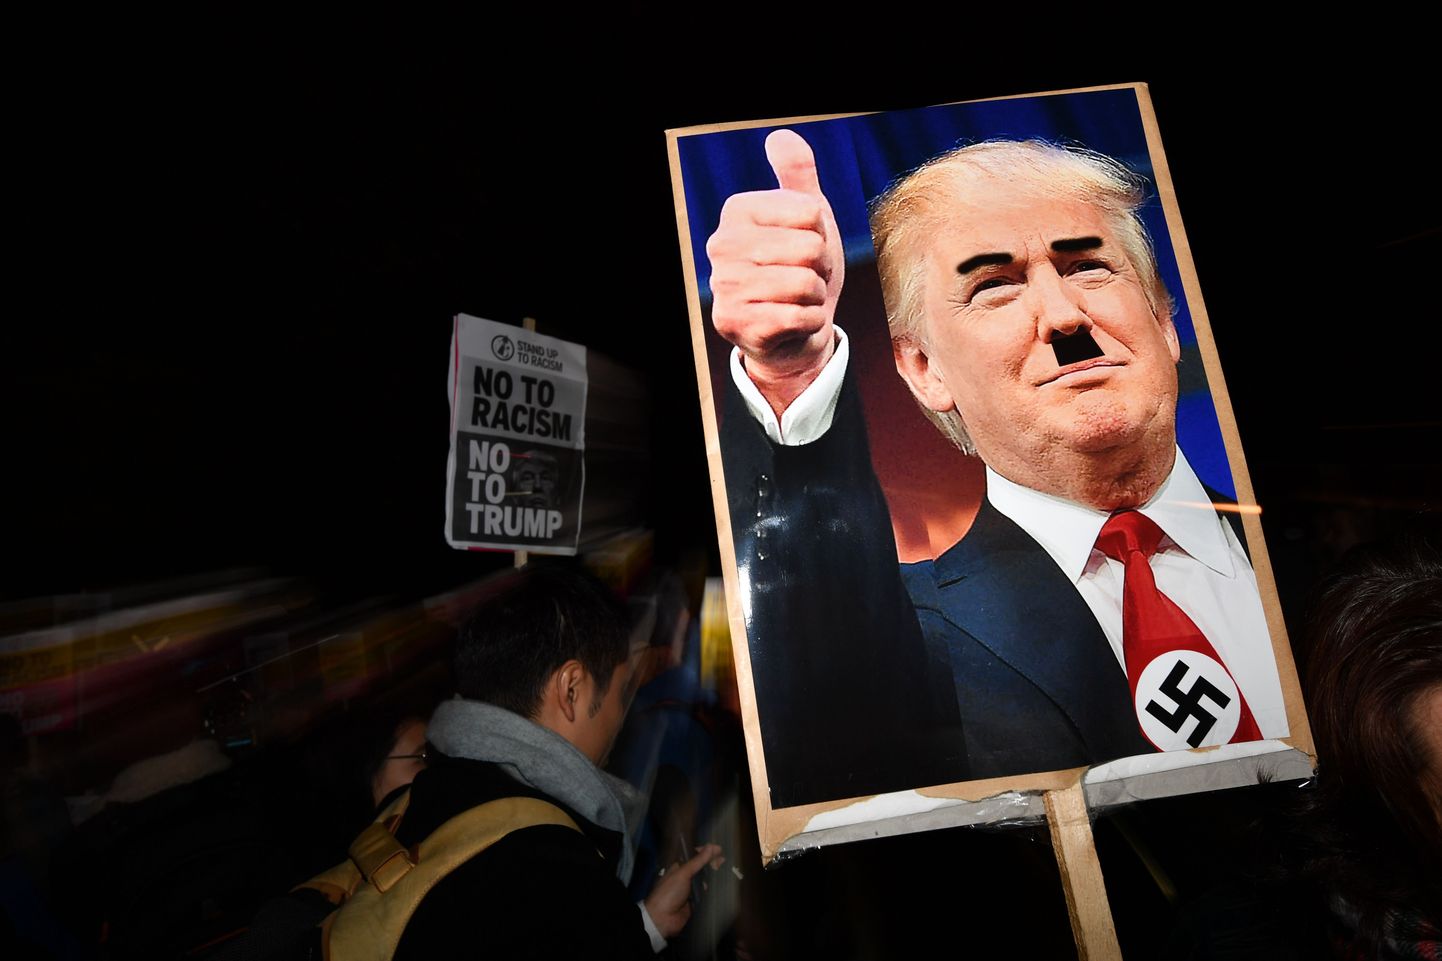 Donald Trumpi on plakatil kujutatud Adolf Hitlerina